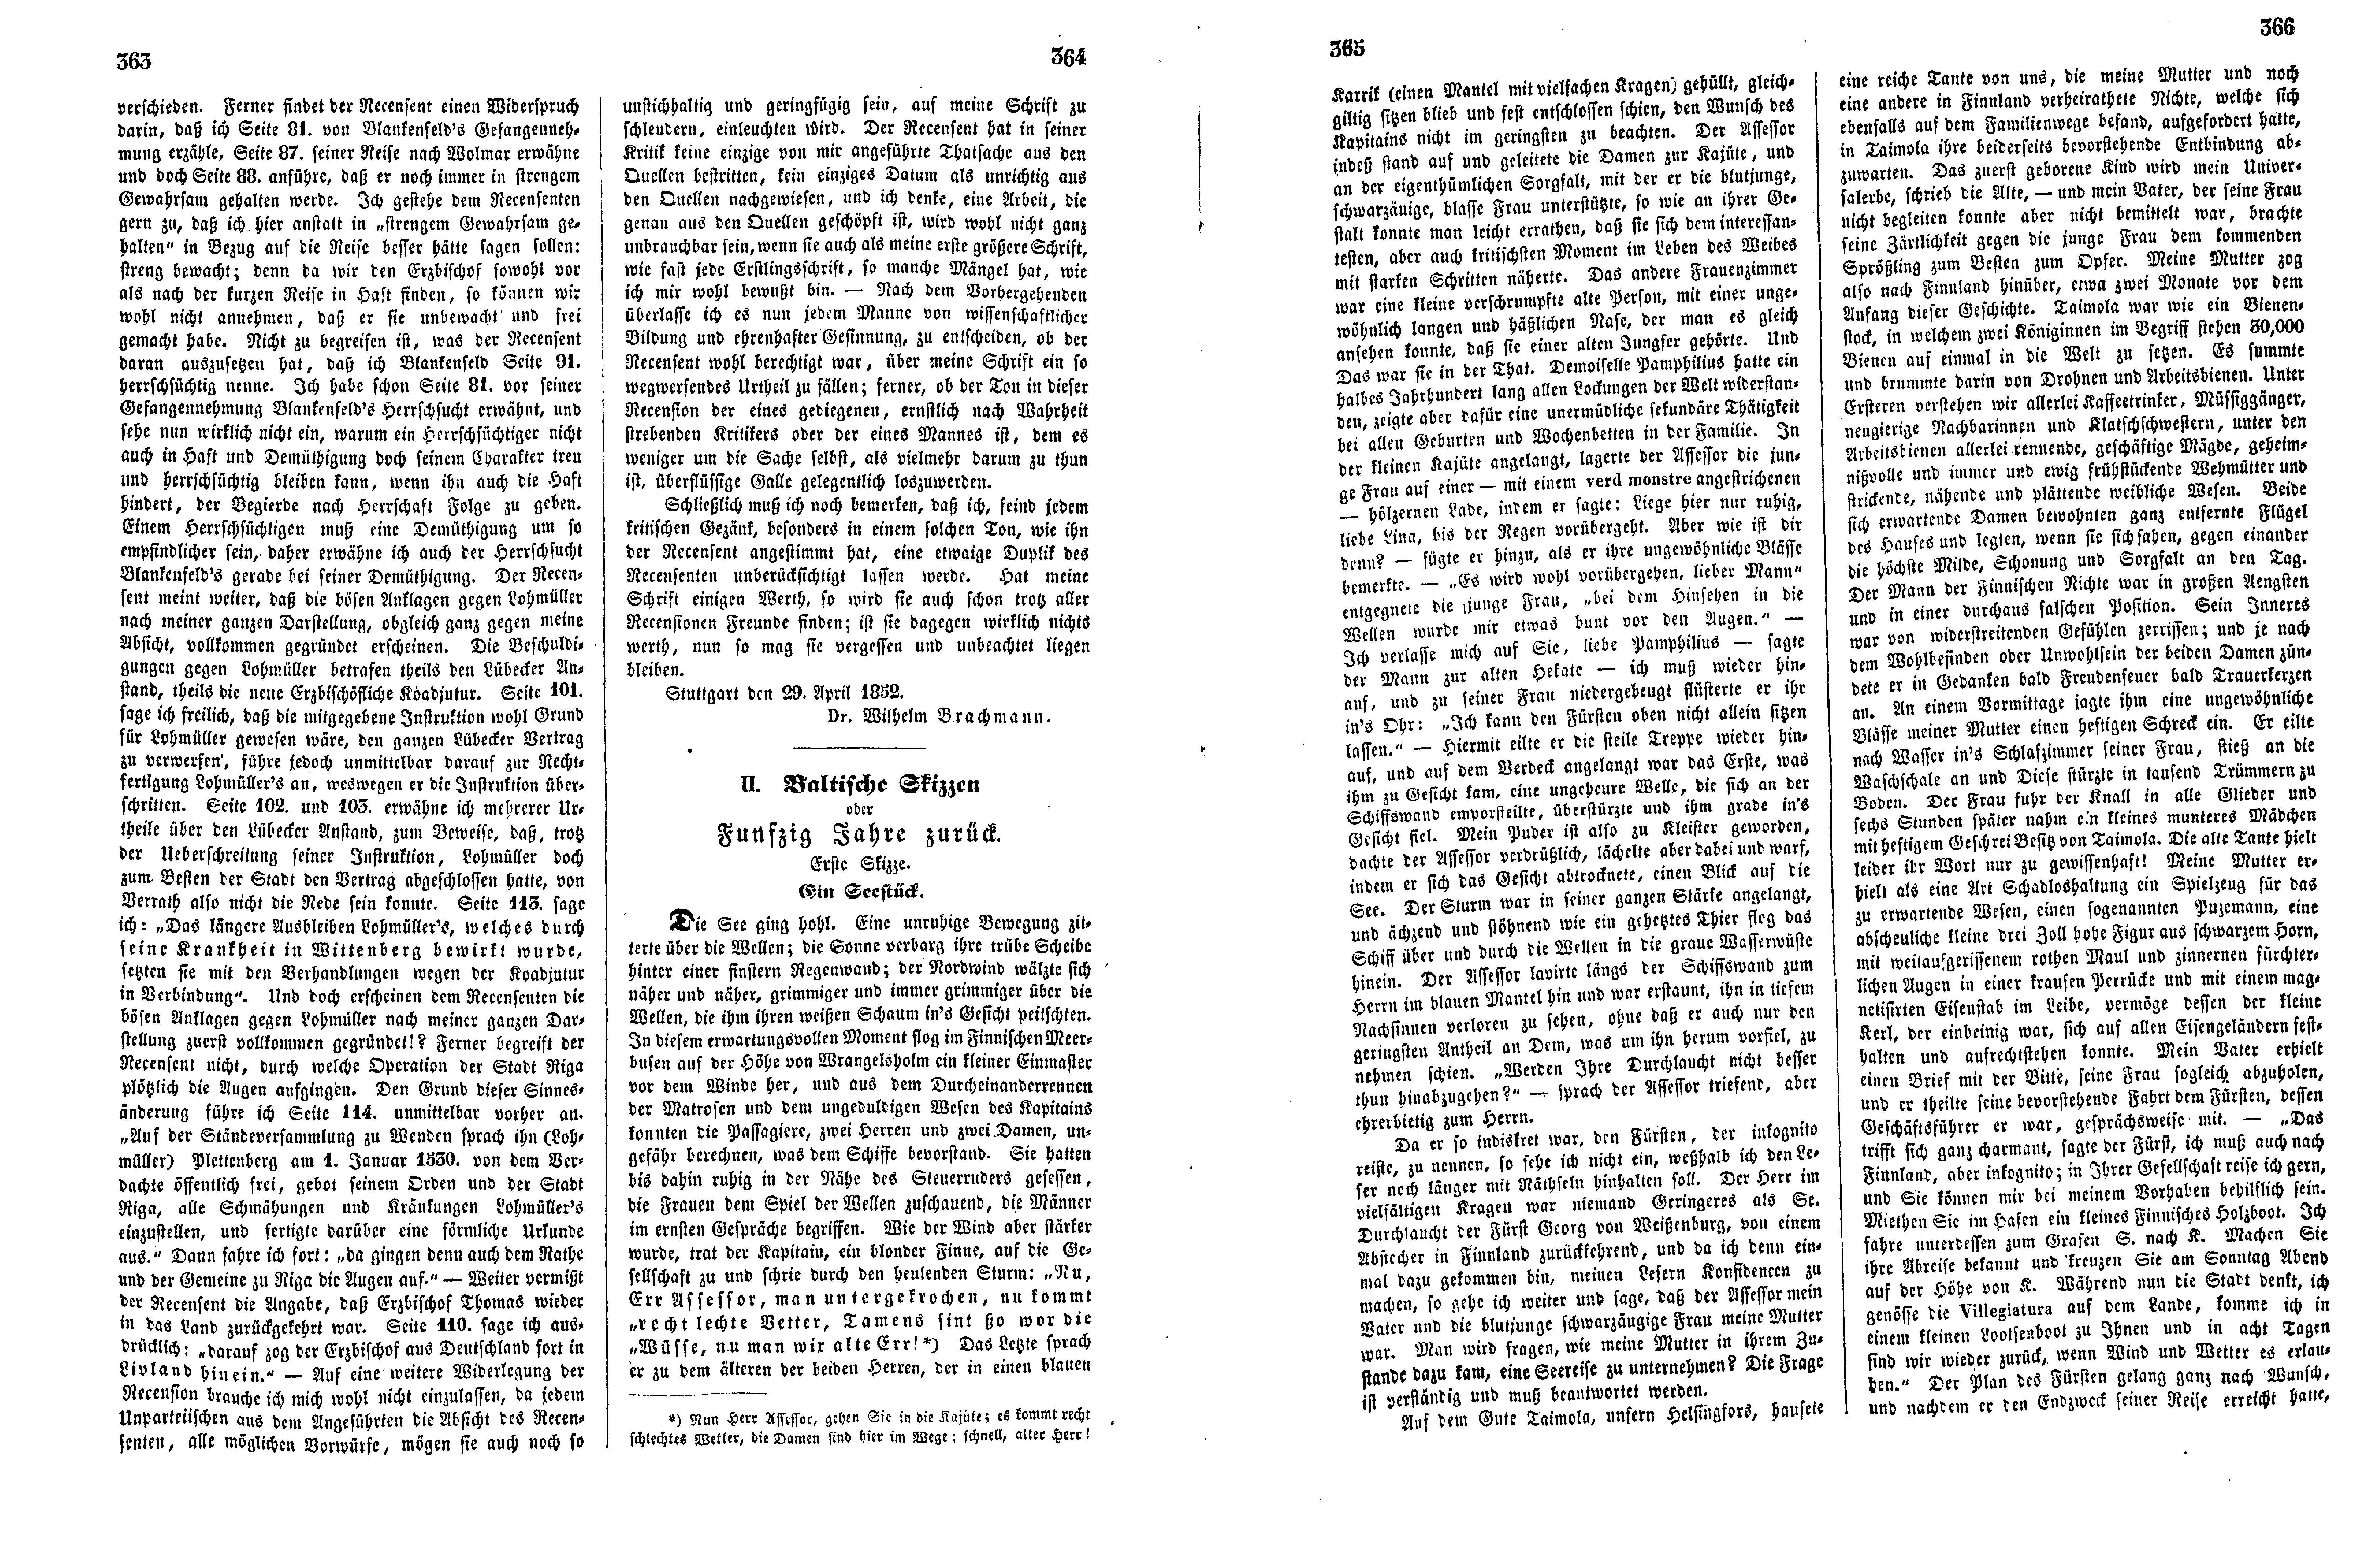 Baltische Skizzen oder Funfzig Jahre zurück (1852) | 1. (363-366) Haupttext